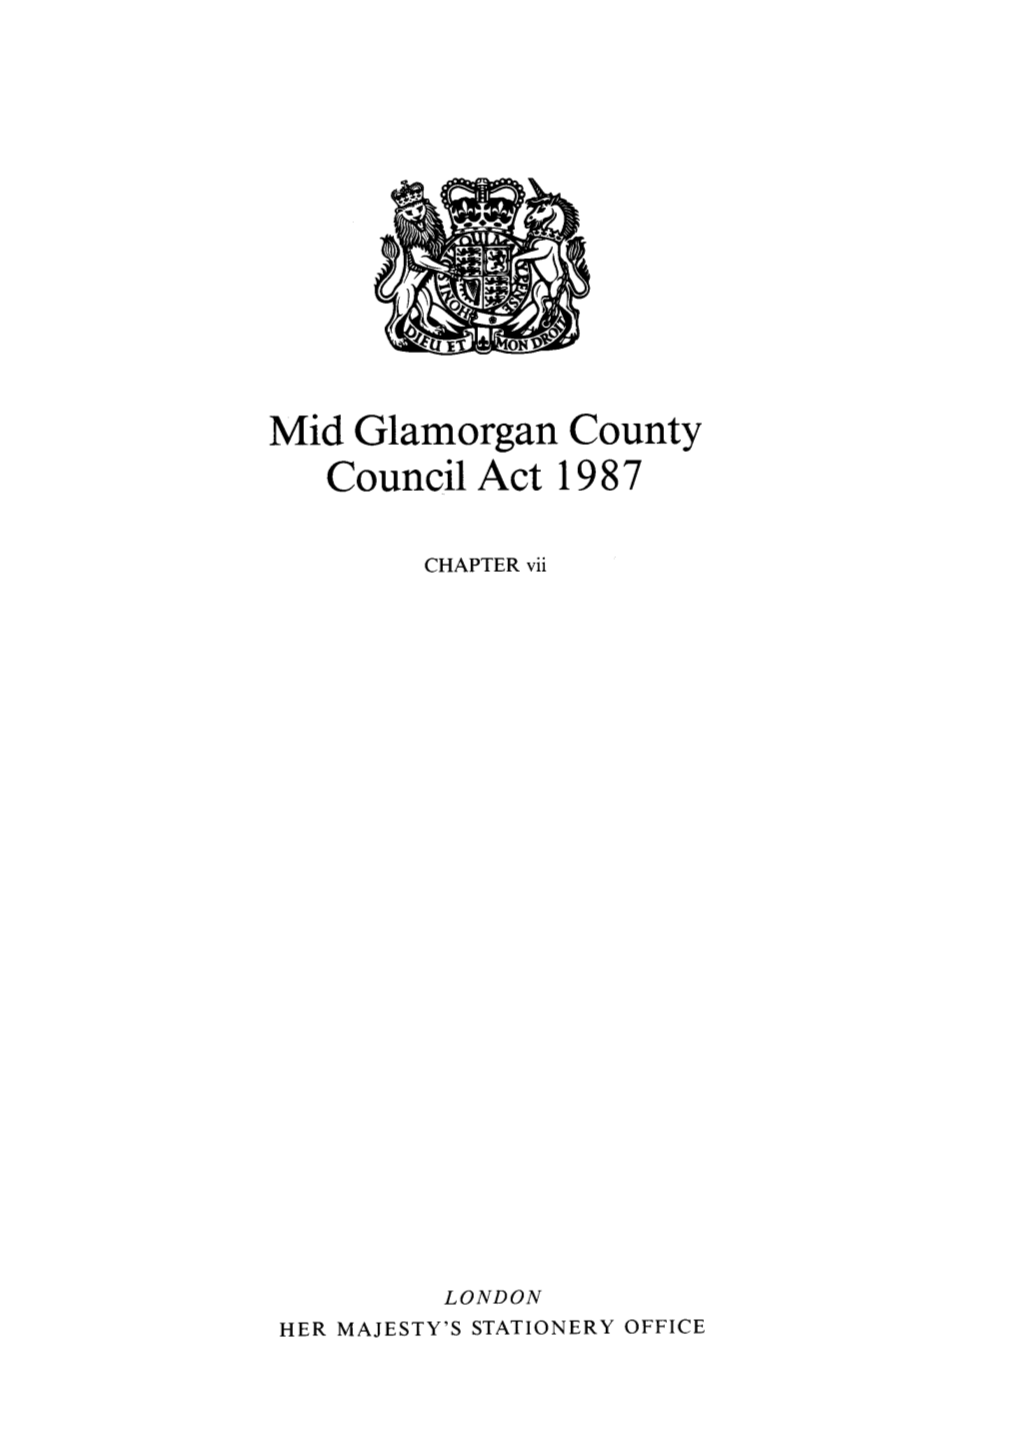 Mid Glamorgan County Council Act 1987